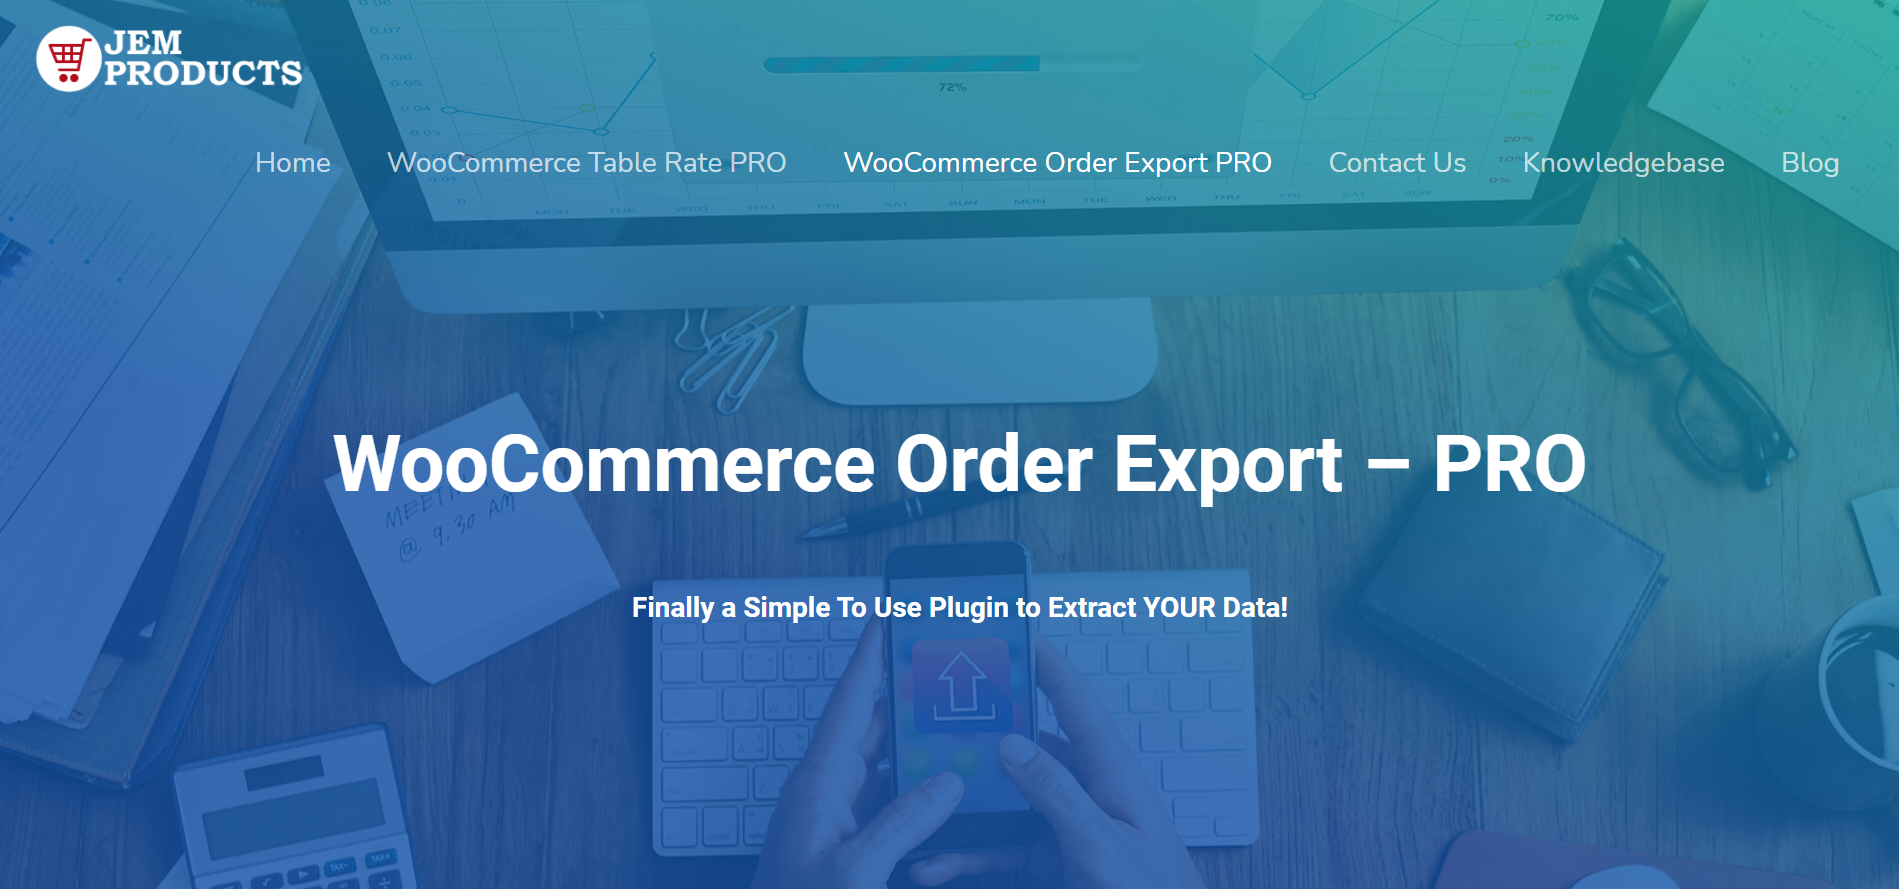 WooCommerce Order Export website